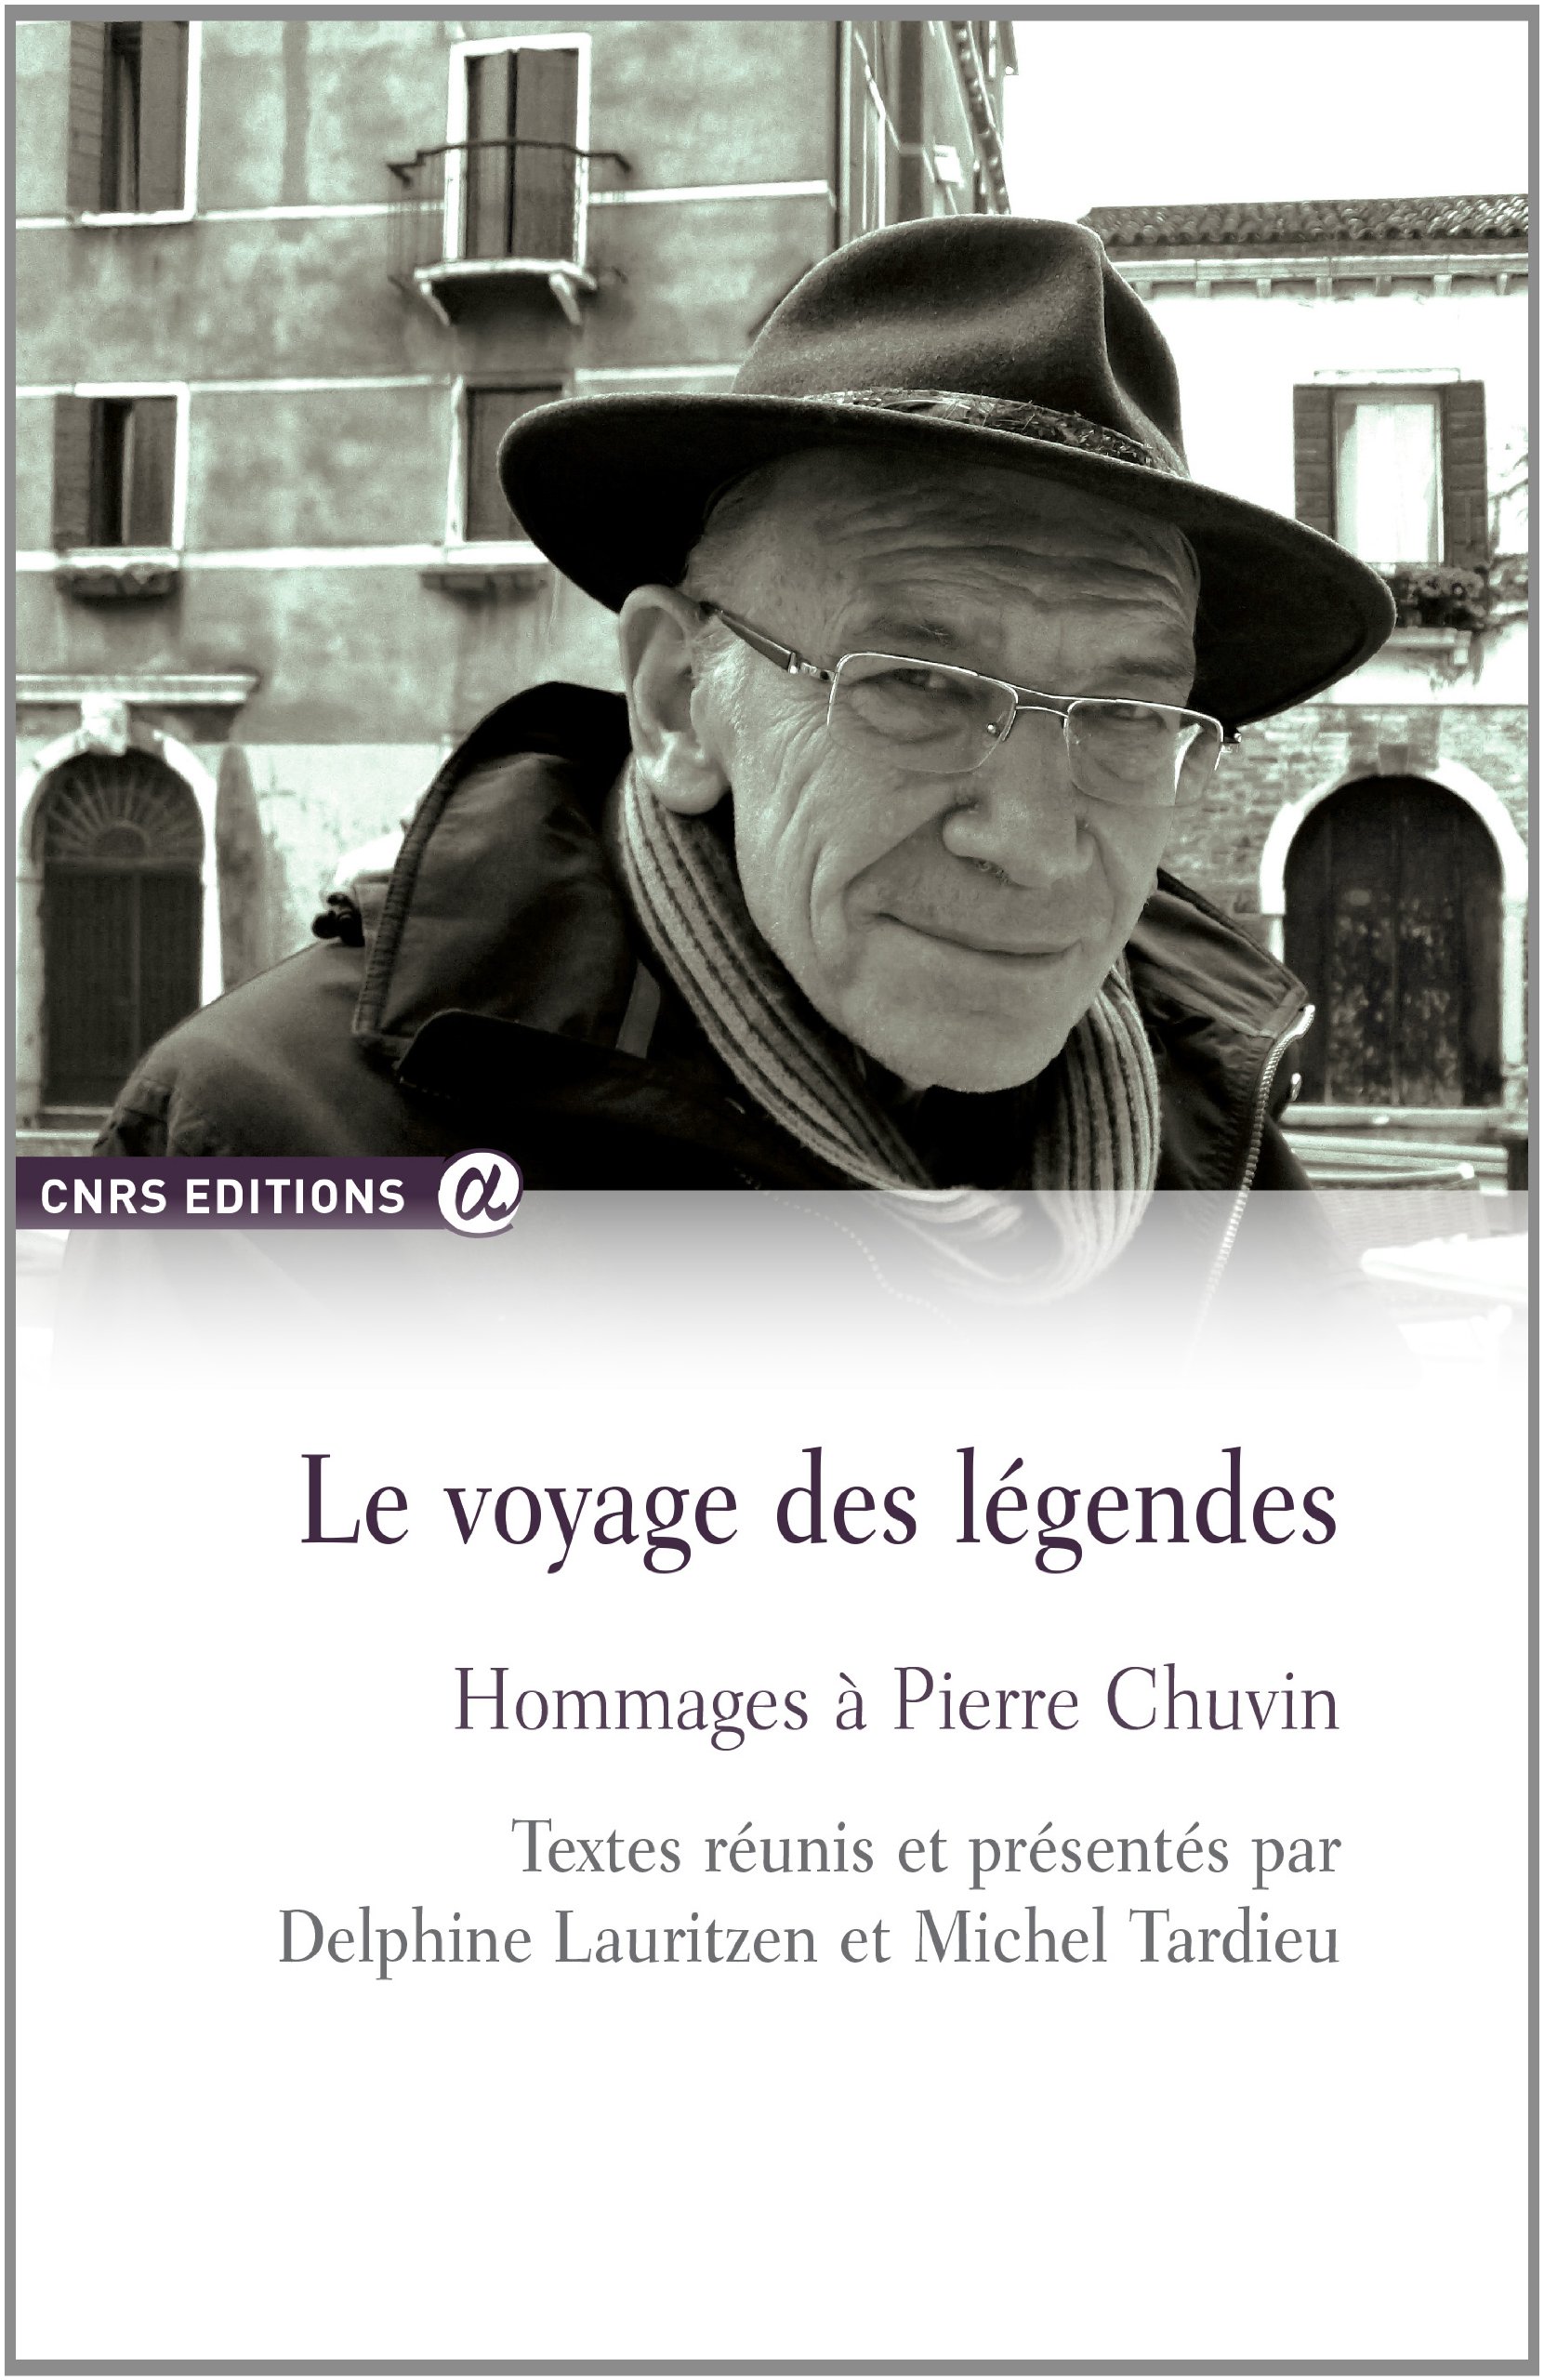 Le voyage des légendes. Hommages à Pierre Chuvin, 2014, 450 p.